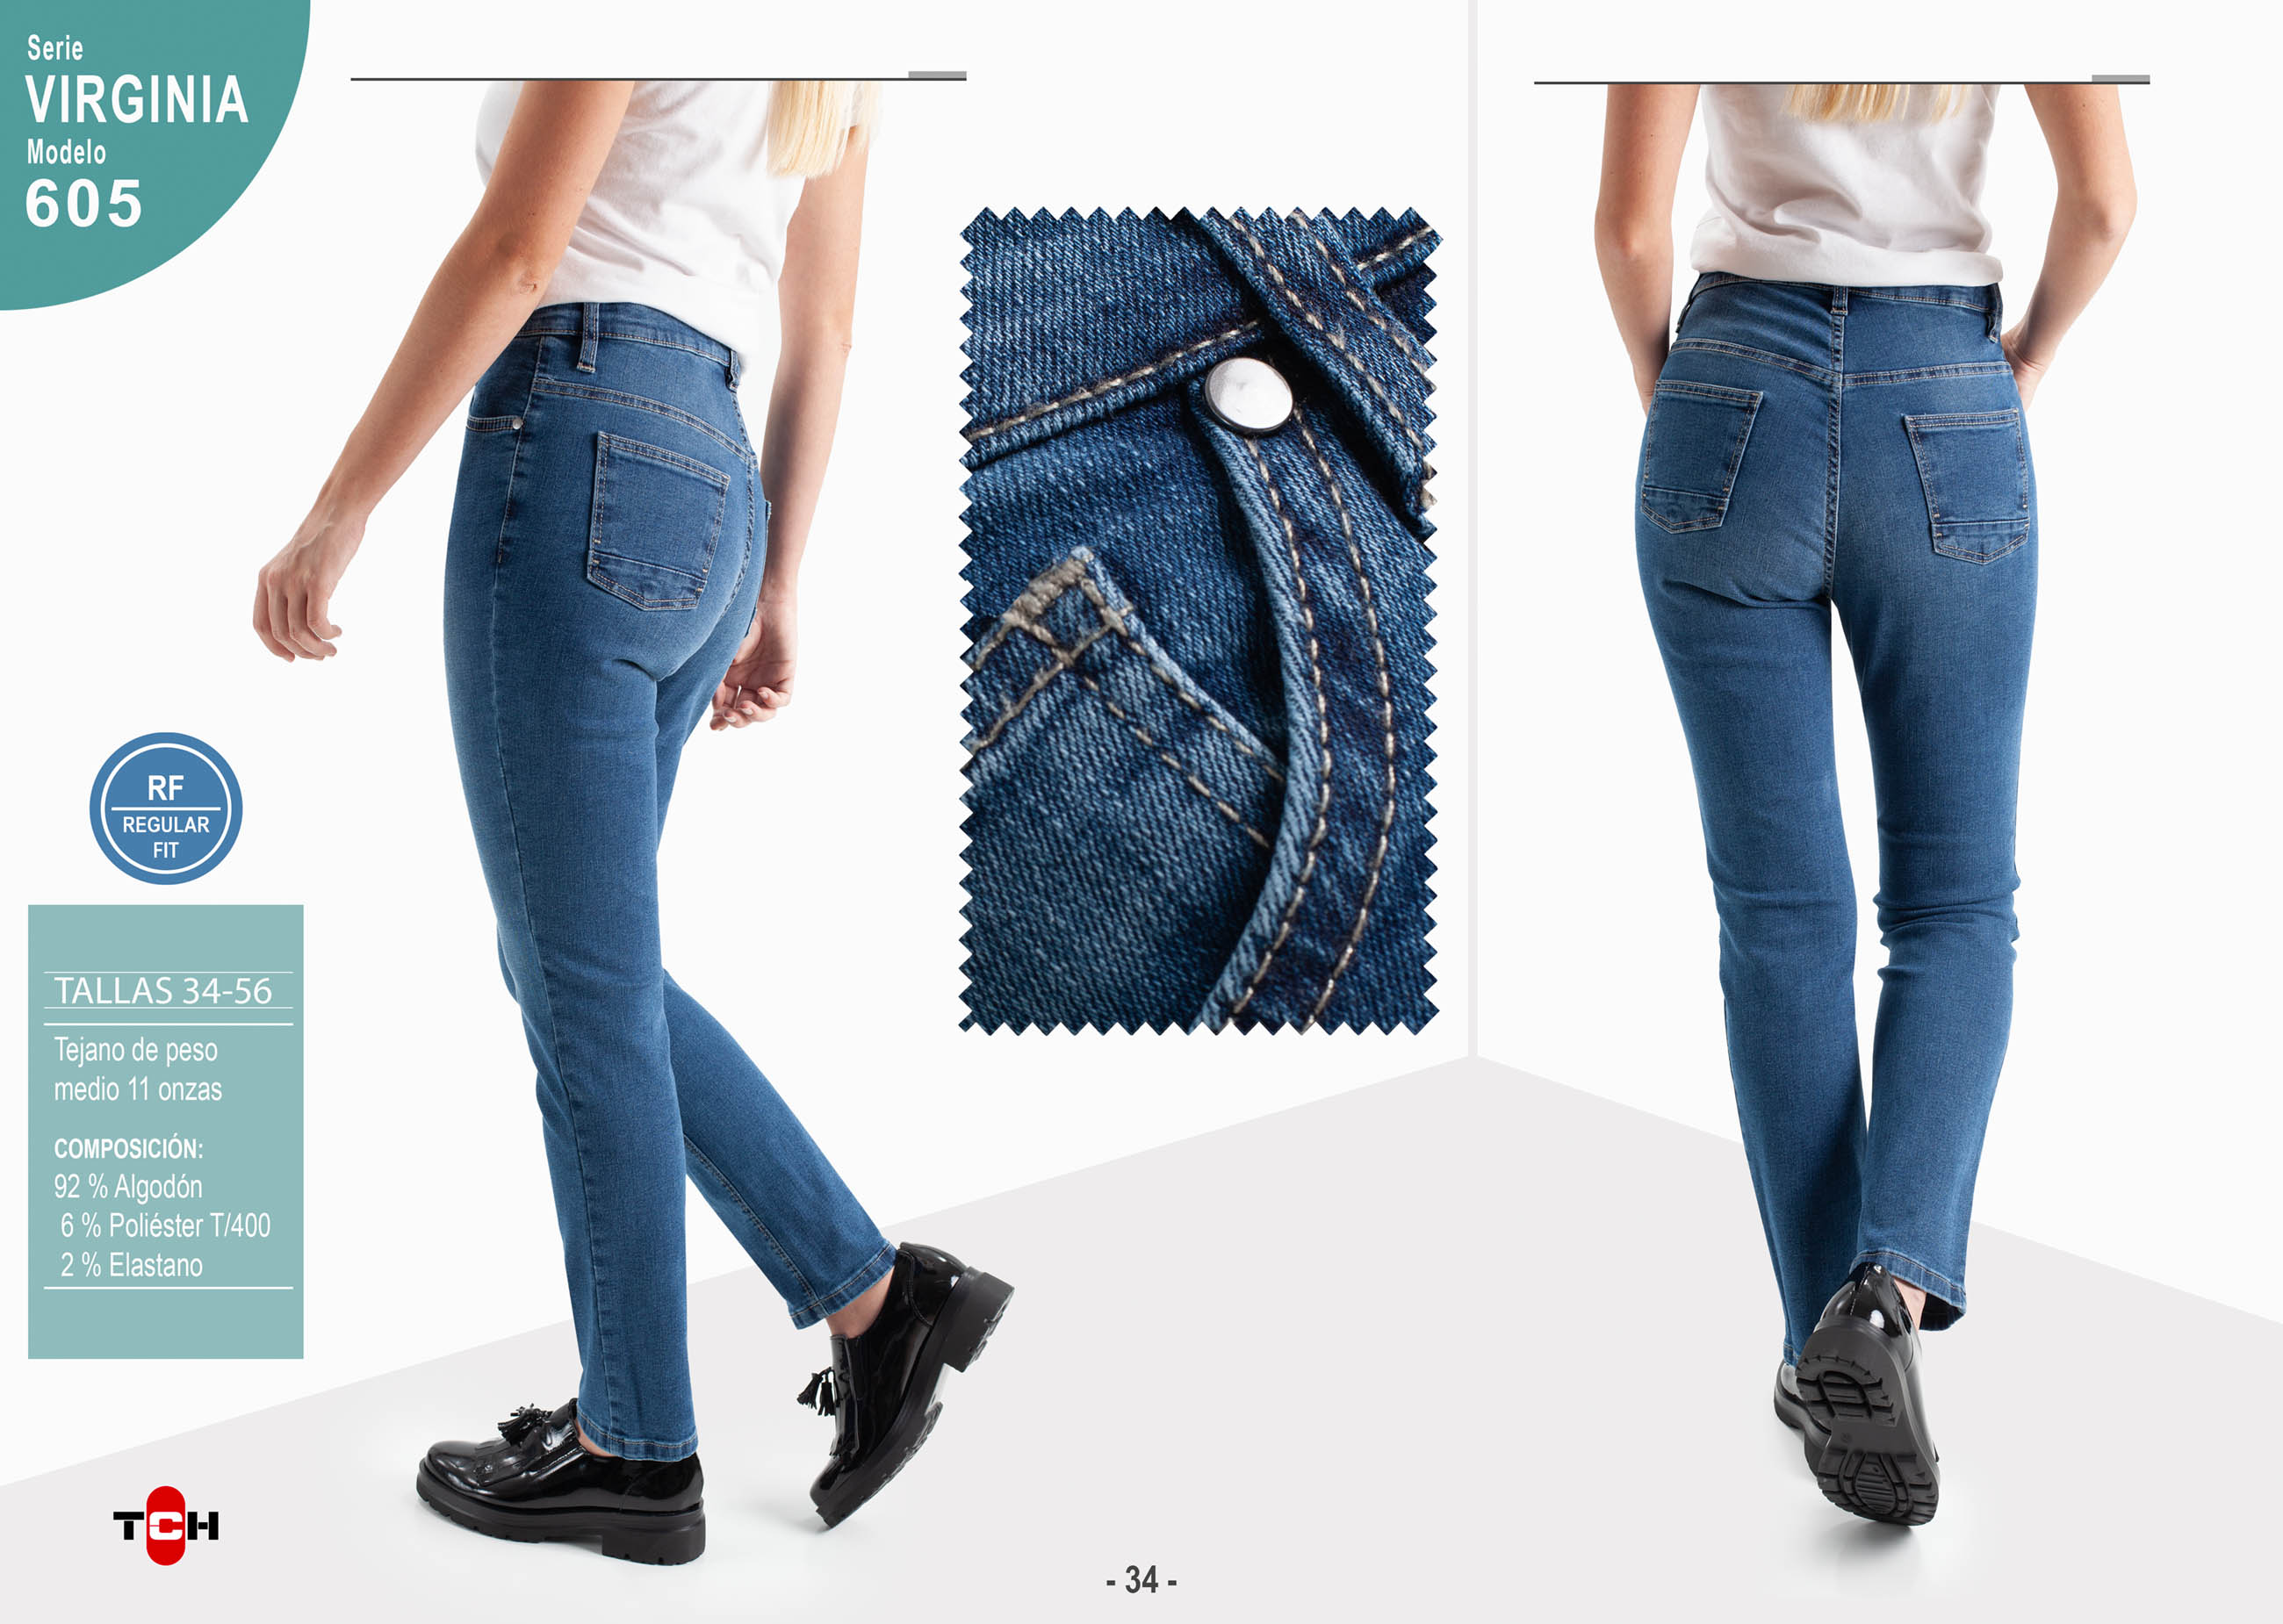 Pantalón vaquero TCH Jeans elástico ajustado de mujer fabricado en tejido denim de algodón con Lycra.